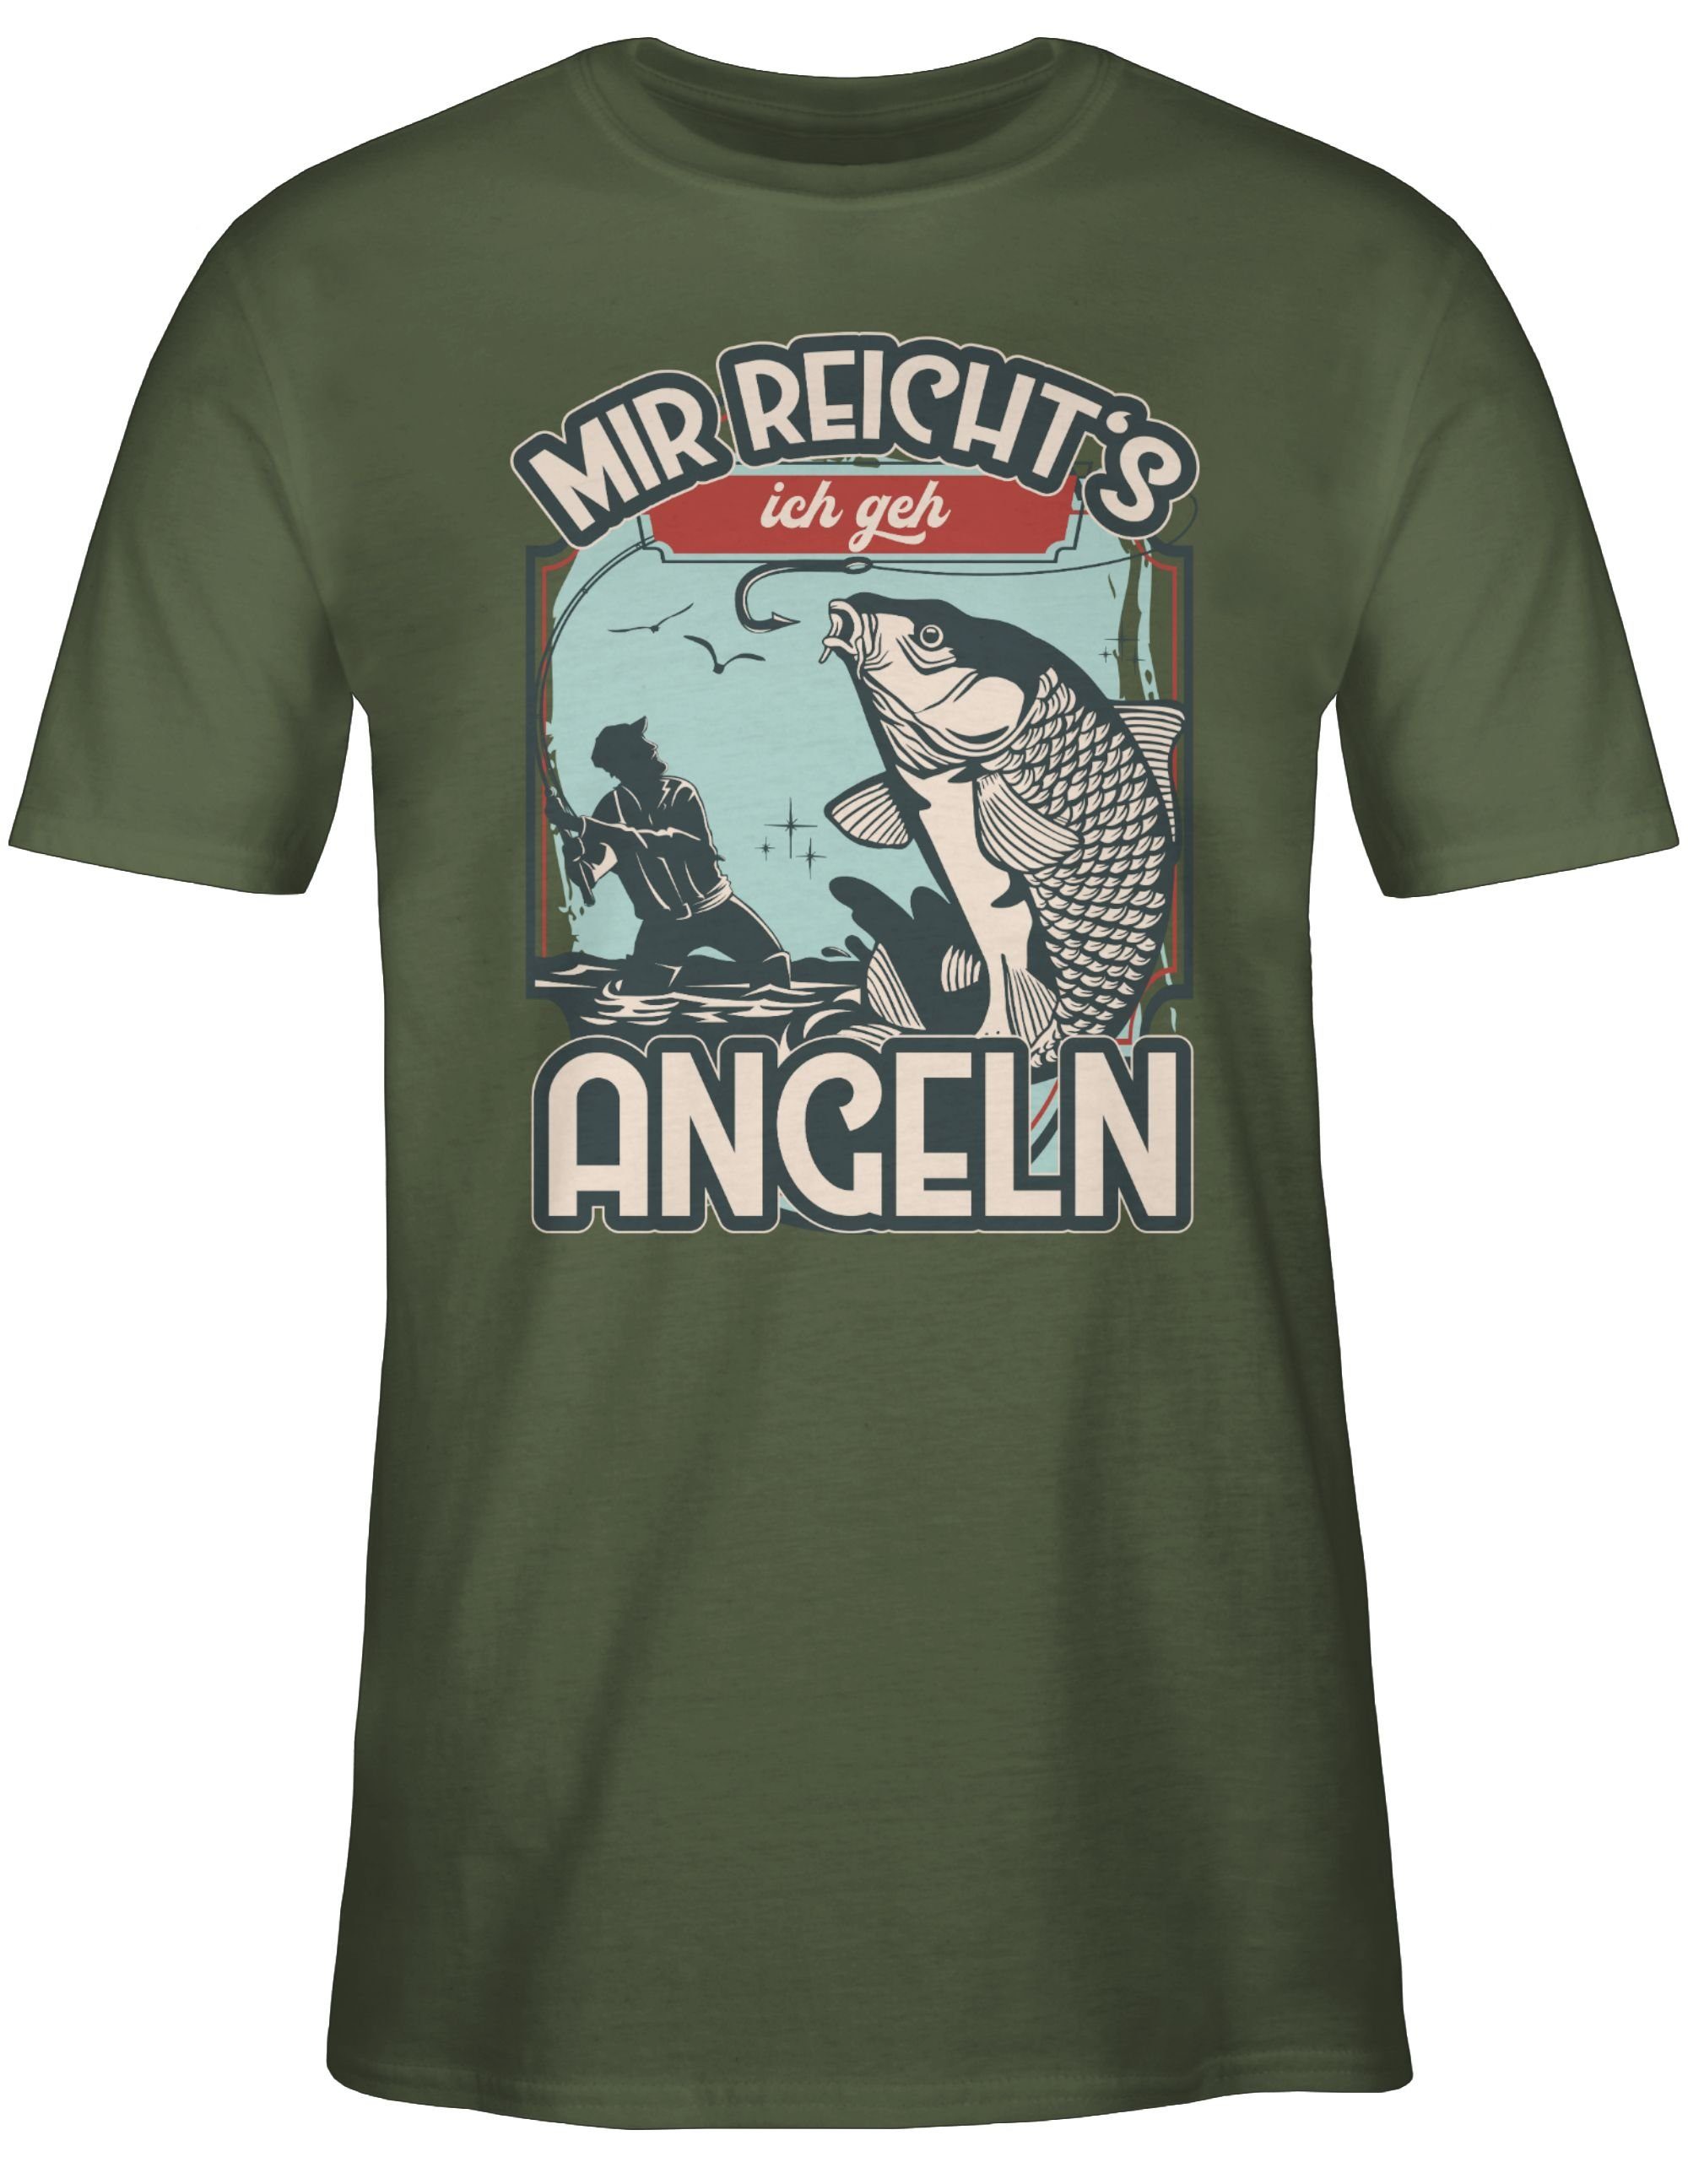 Mir Geschenke Angler ich 03 T-Shirt reicht's Shirtracer angeln Grün Army geh